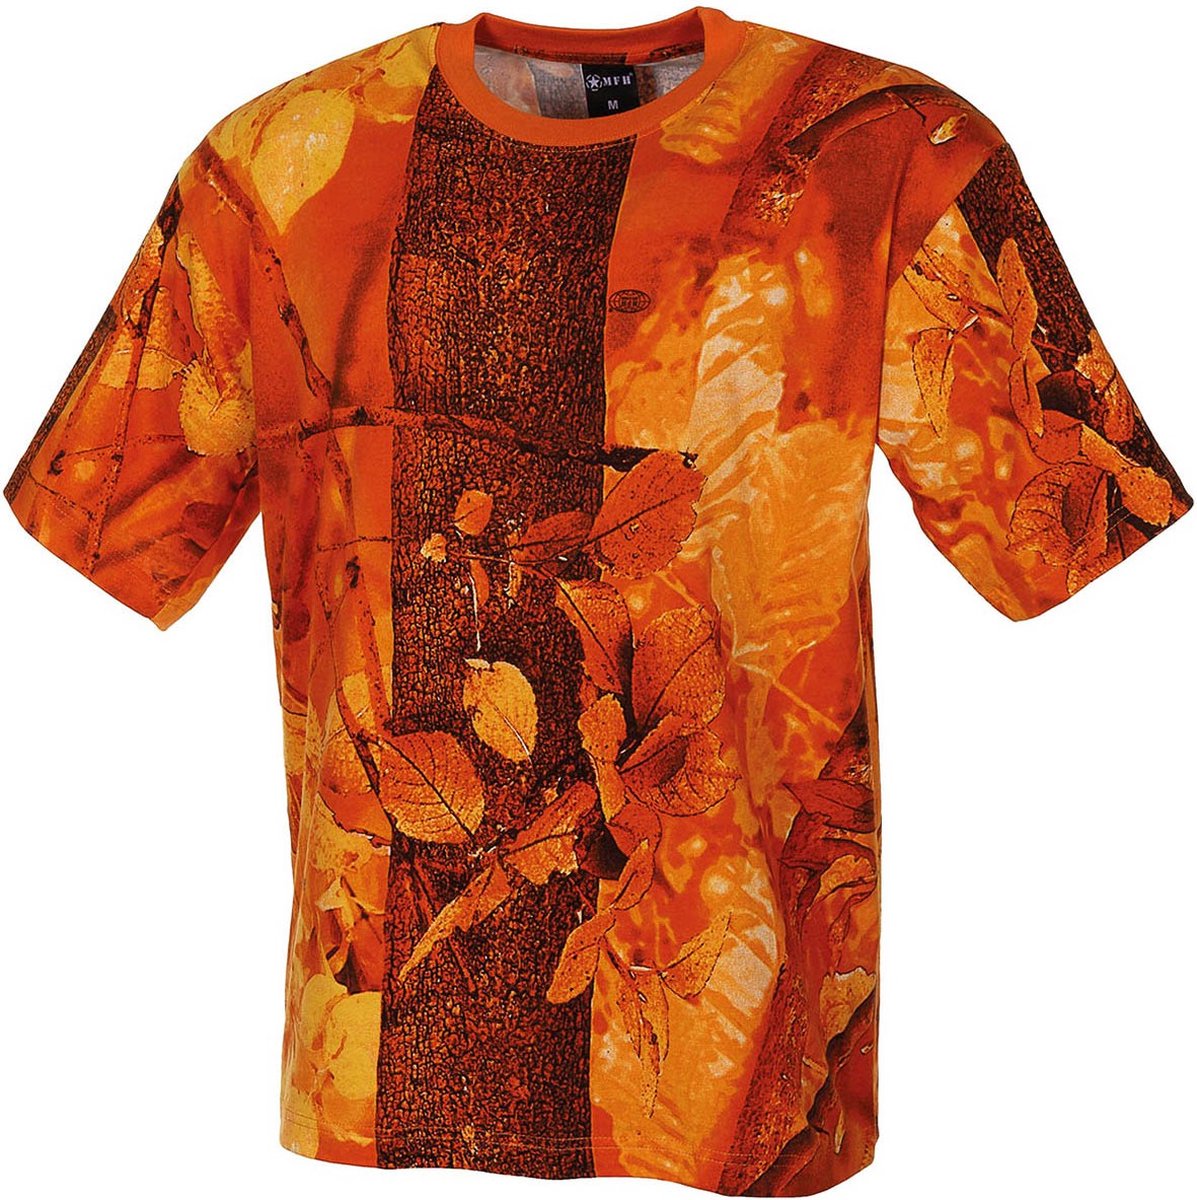 MFH US T-Shirt - Hunter oranje - 170 g/m² - MAAT 6XL